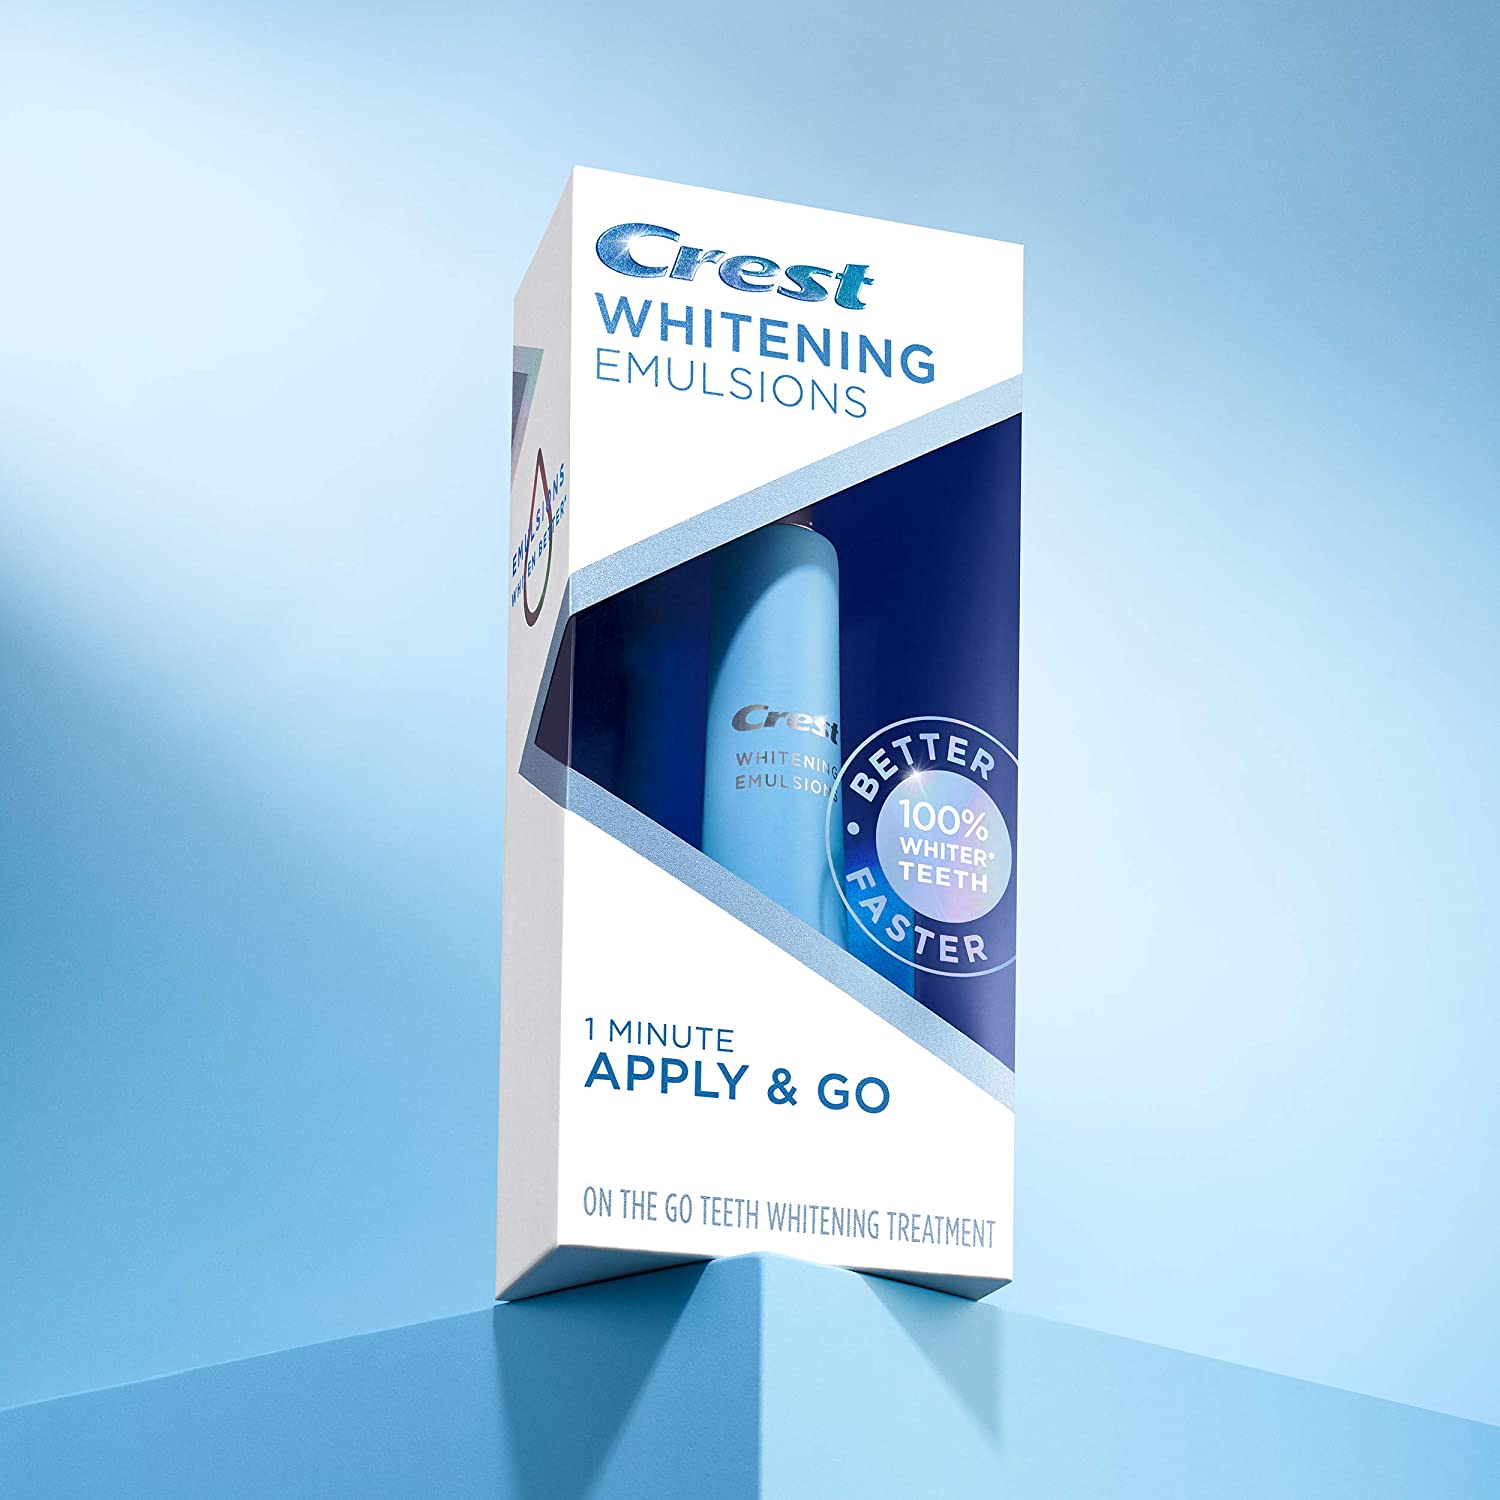 Crest Whitening Emulsions on the Go Leave-on Teeth Whitening Pen